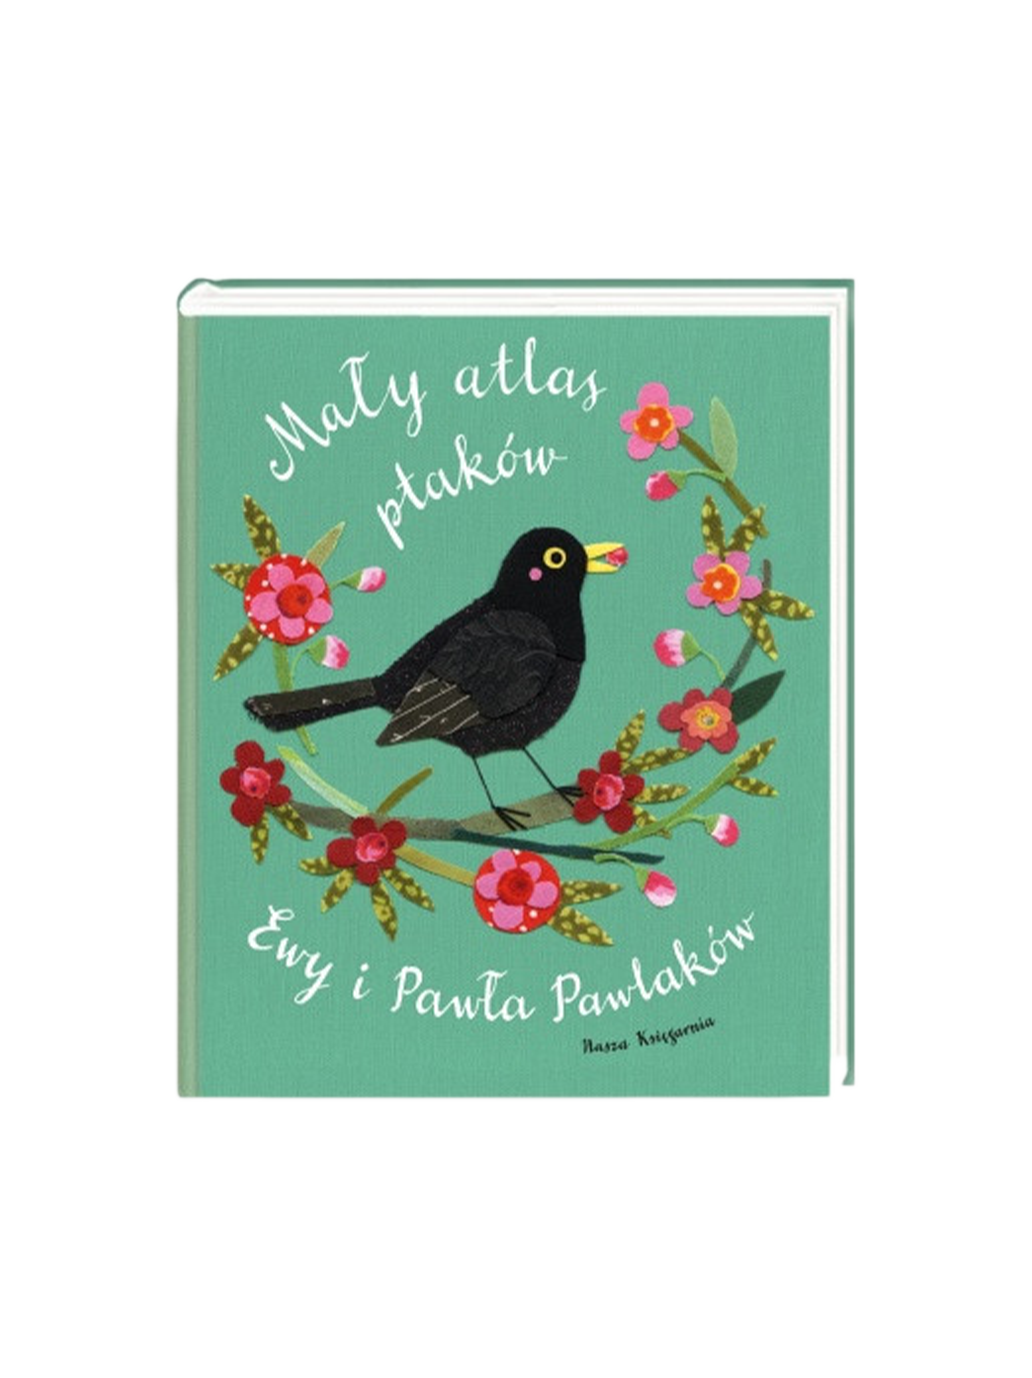 Un petit atlas des oiseaux par Ewa et Paweł Pawlak